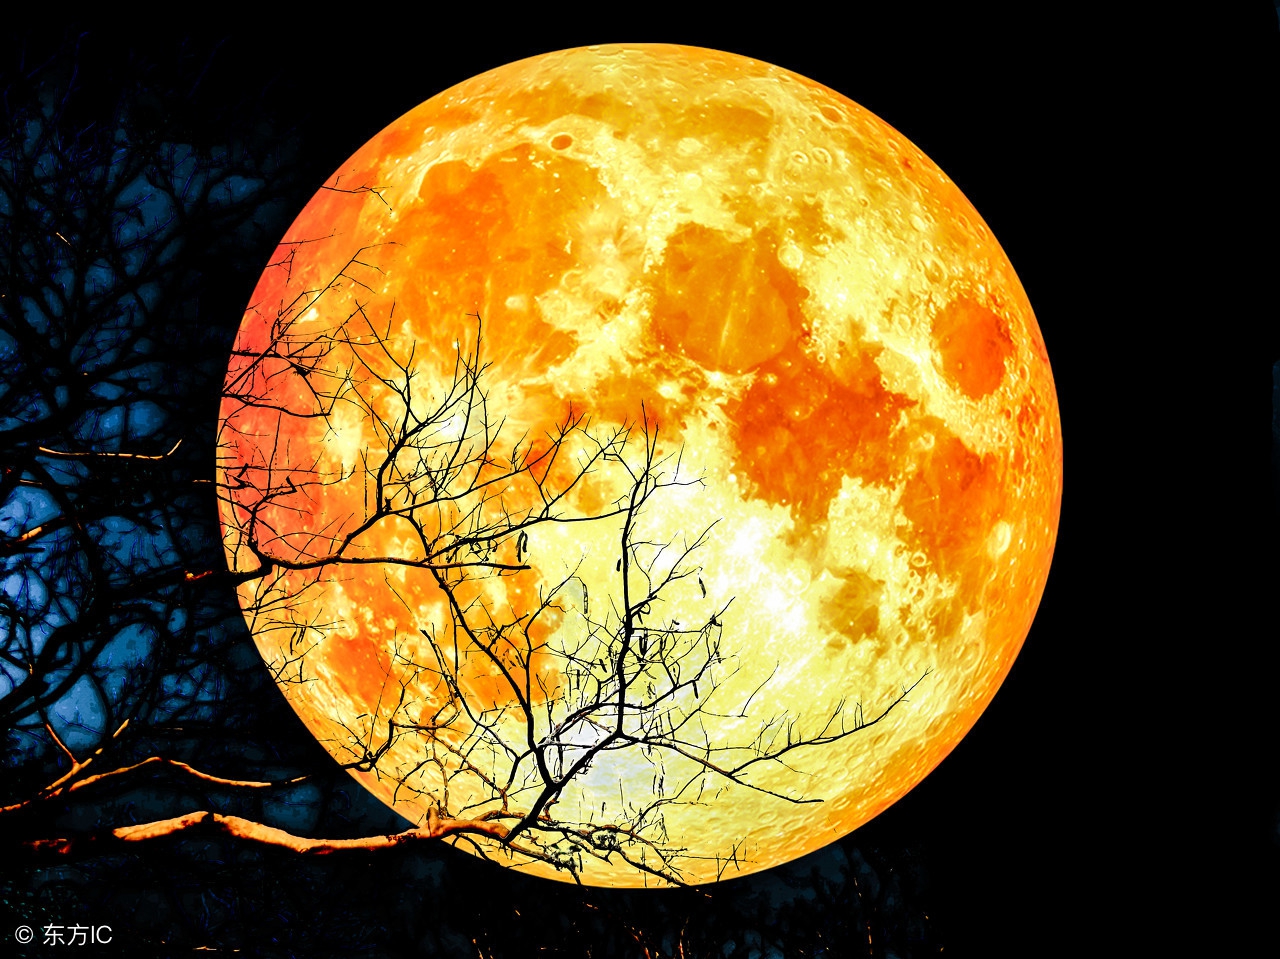 中秋到了,今年的月亮什么时候最圆呢?中秋